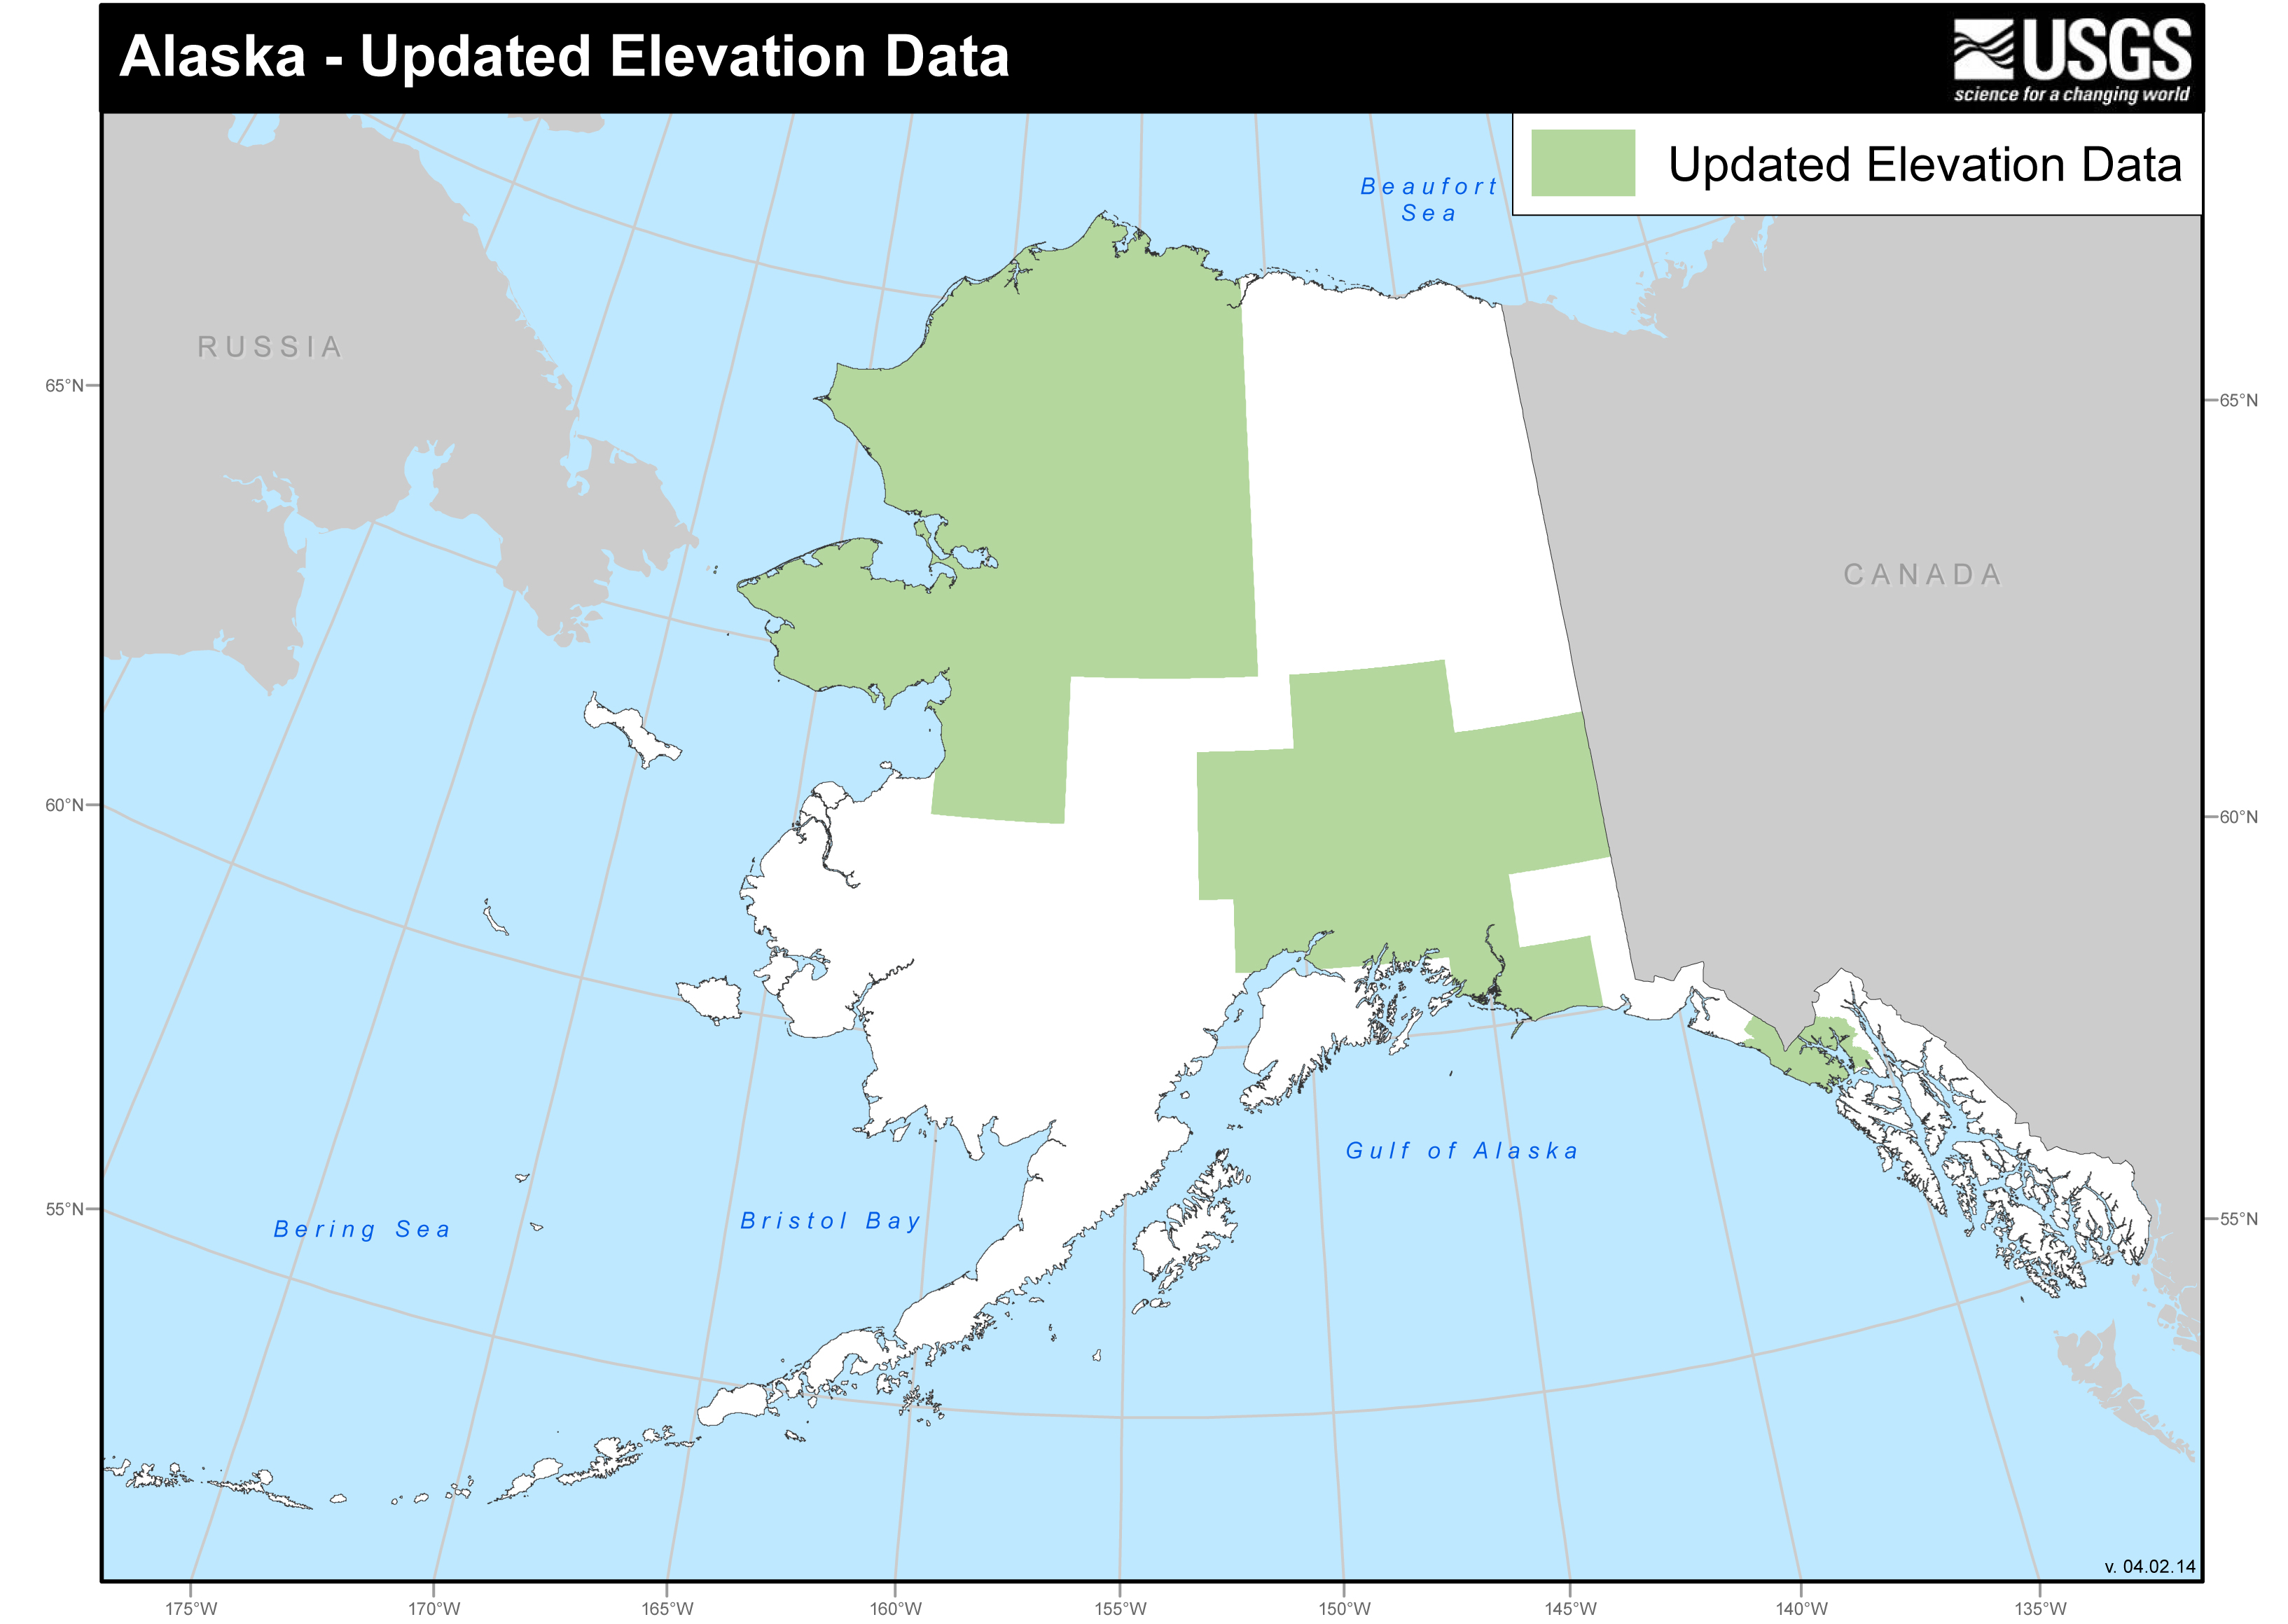 Updated elevation data for Alaska.